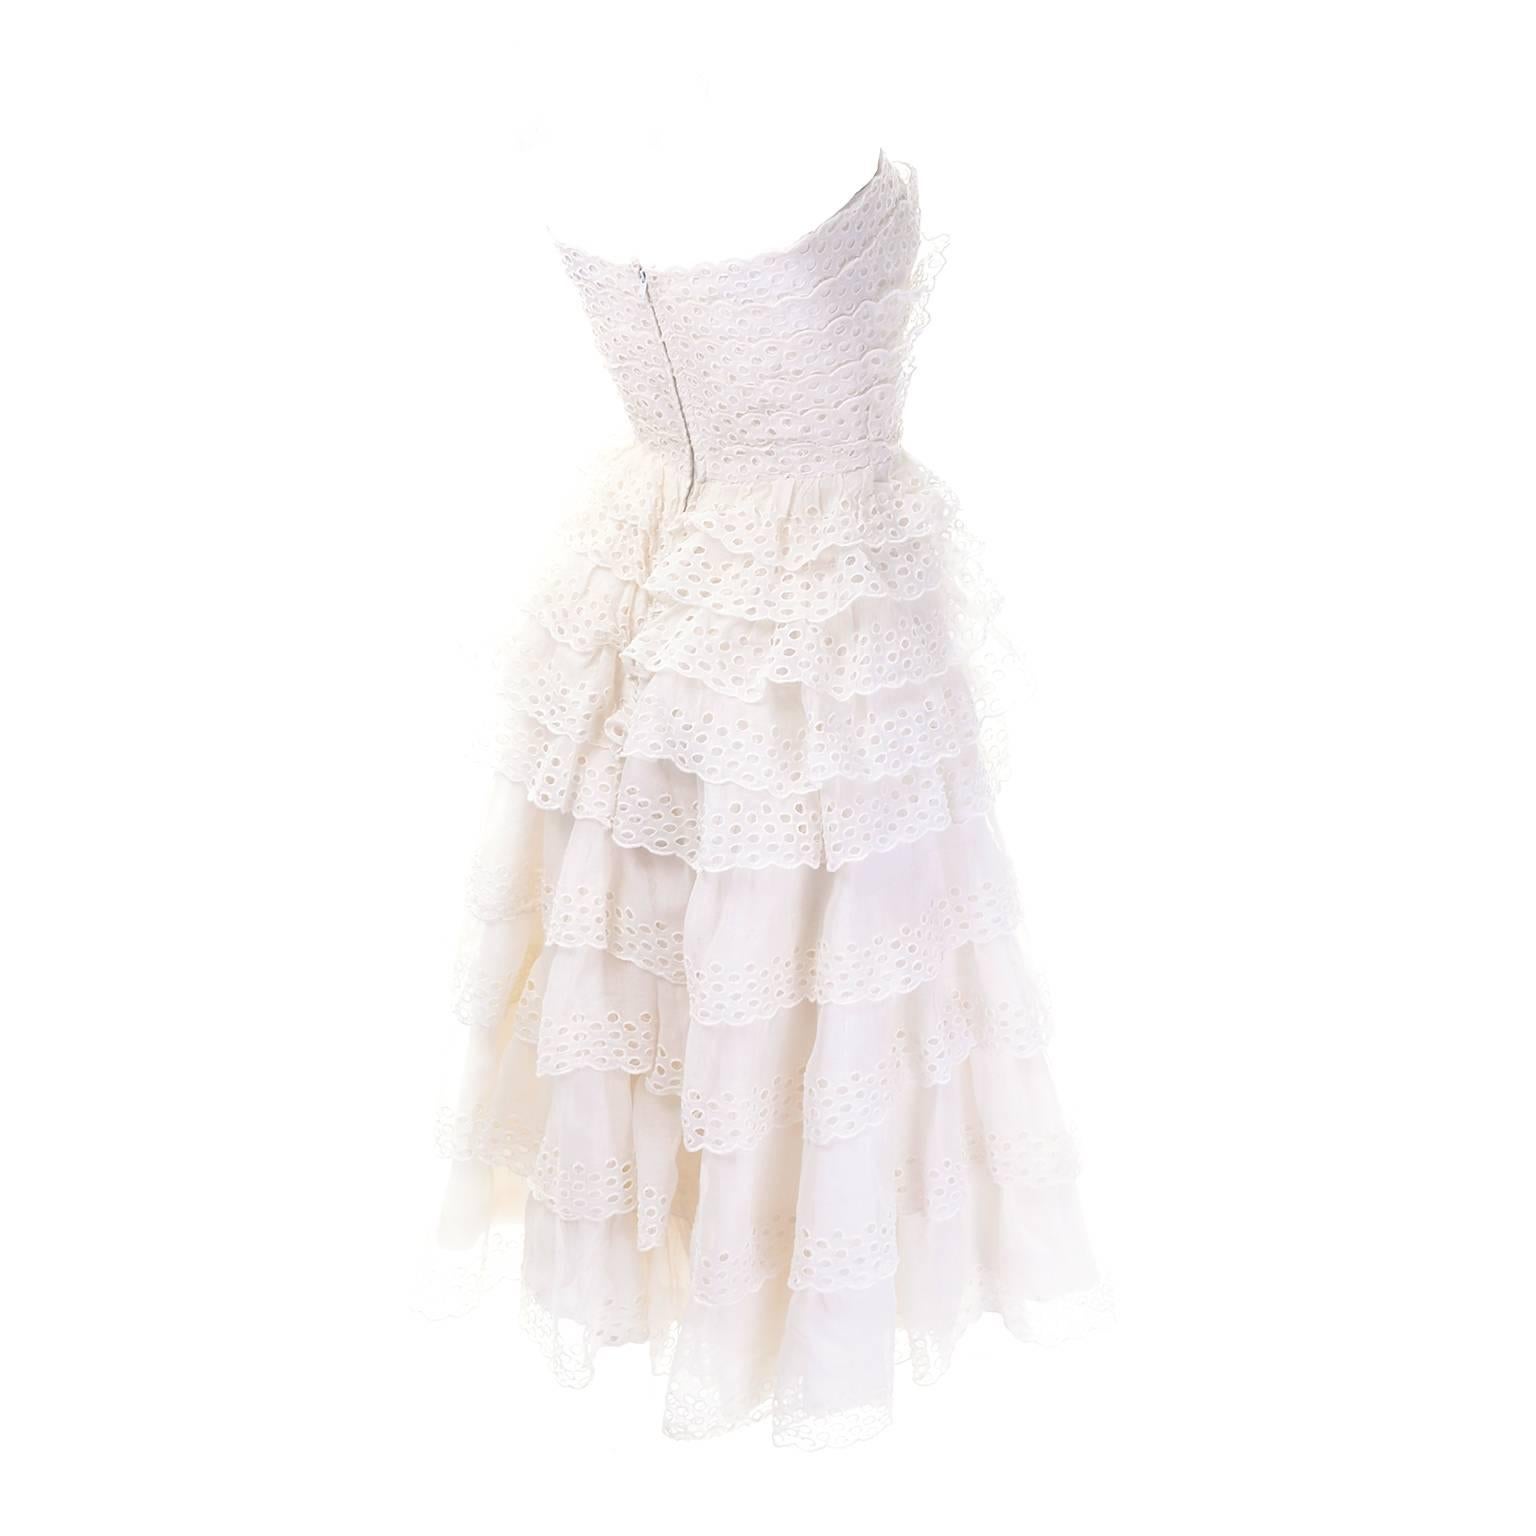 Dies ist ein wunderschönes weißes Vintage-Kleid von Suzy Perette. Die Rüschen bestehen aus mehreren Schichten von Ösen mit Wellenkanten und sechs Reihen von Ösen entlang der Kante jeder Rüsche. Dieses trägerlose Kleid ist vollständig gefüttert, mit